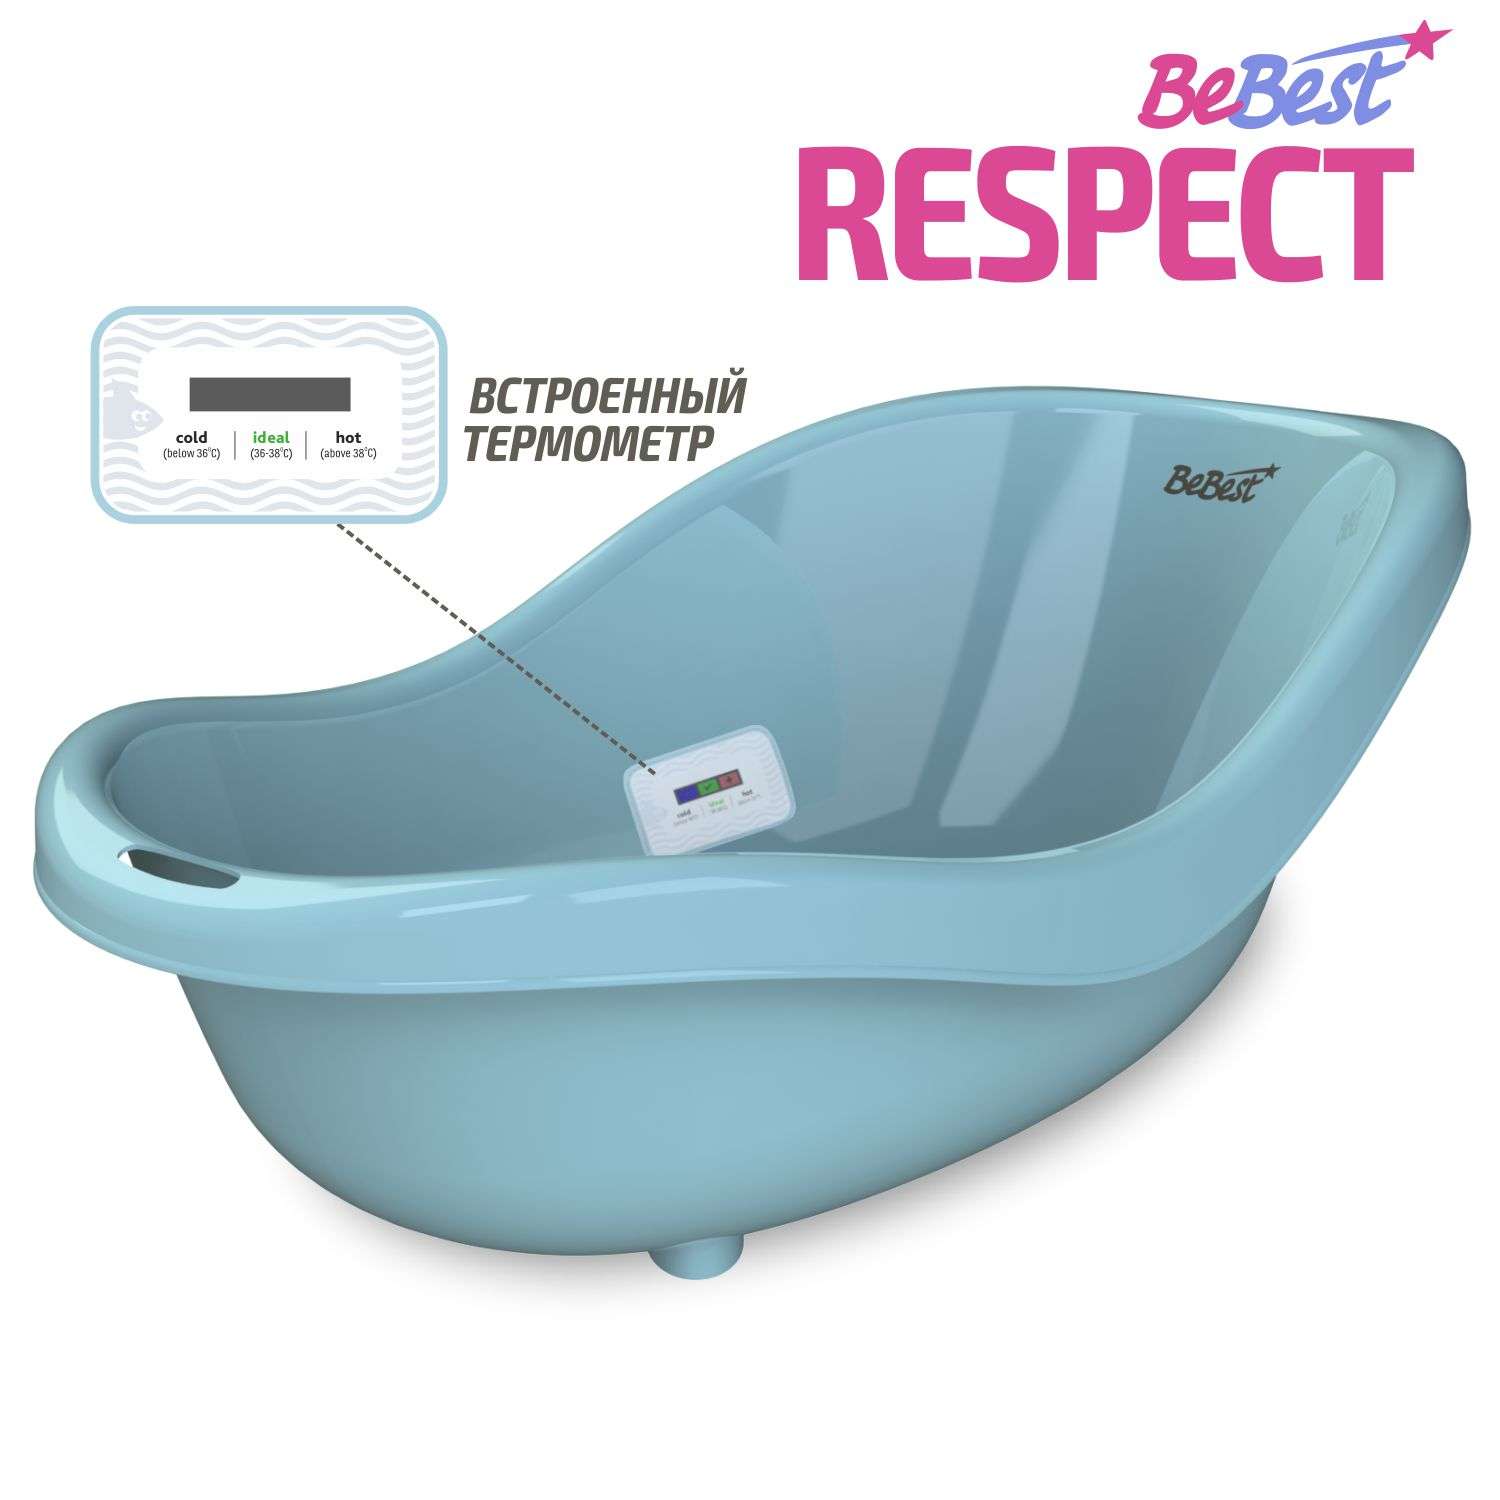 Ванночка для купания BeBest Respect с термометром голубой - фото 1